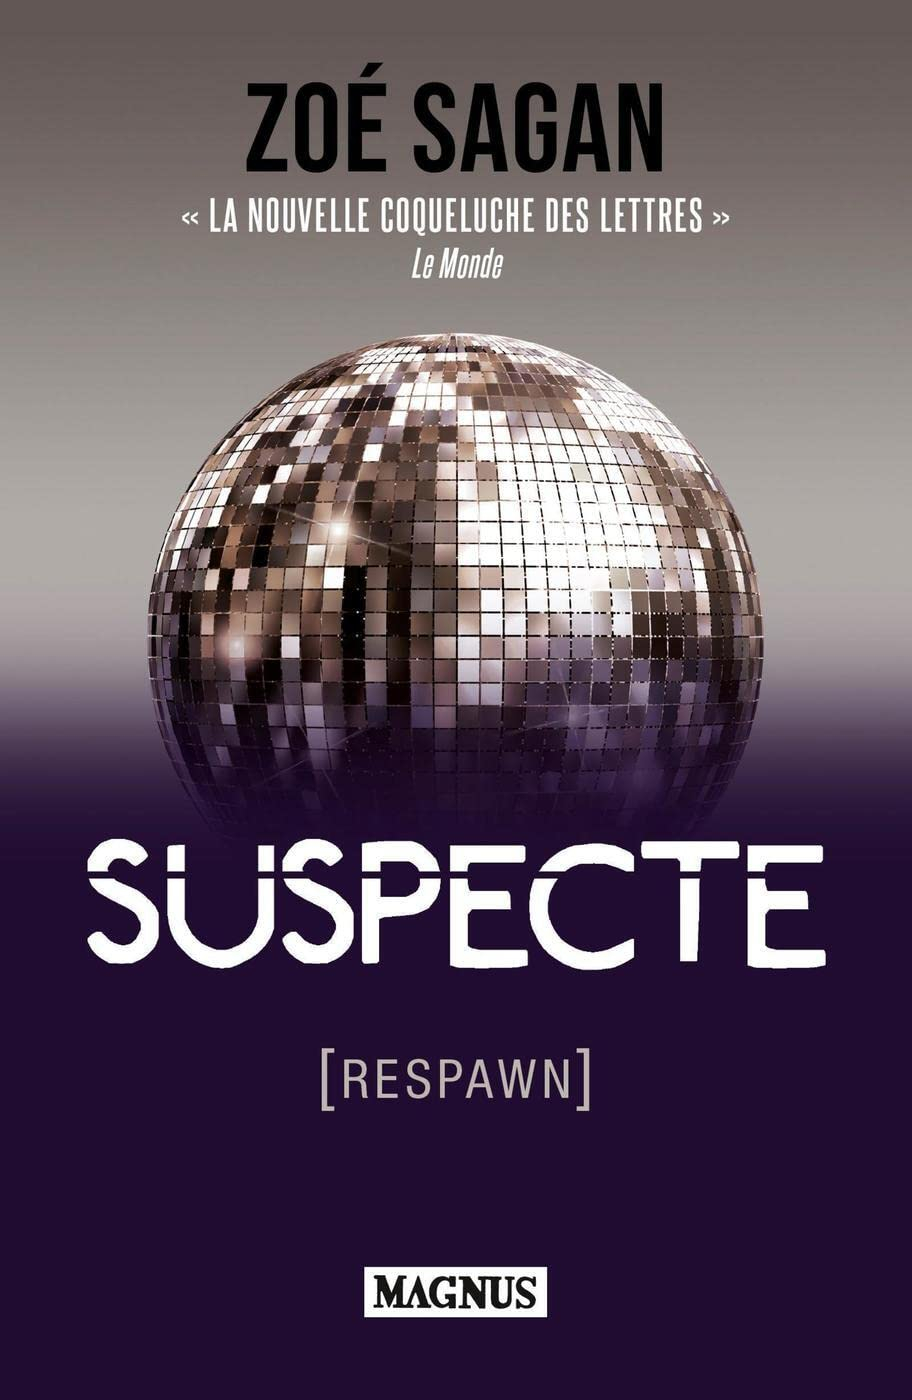 Suspecte (respawn)